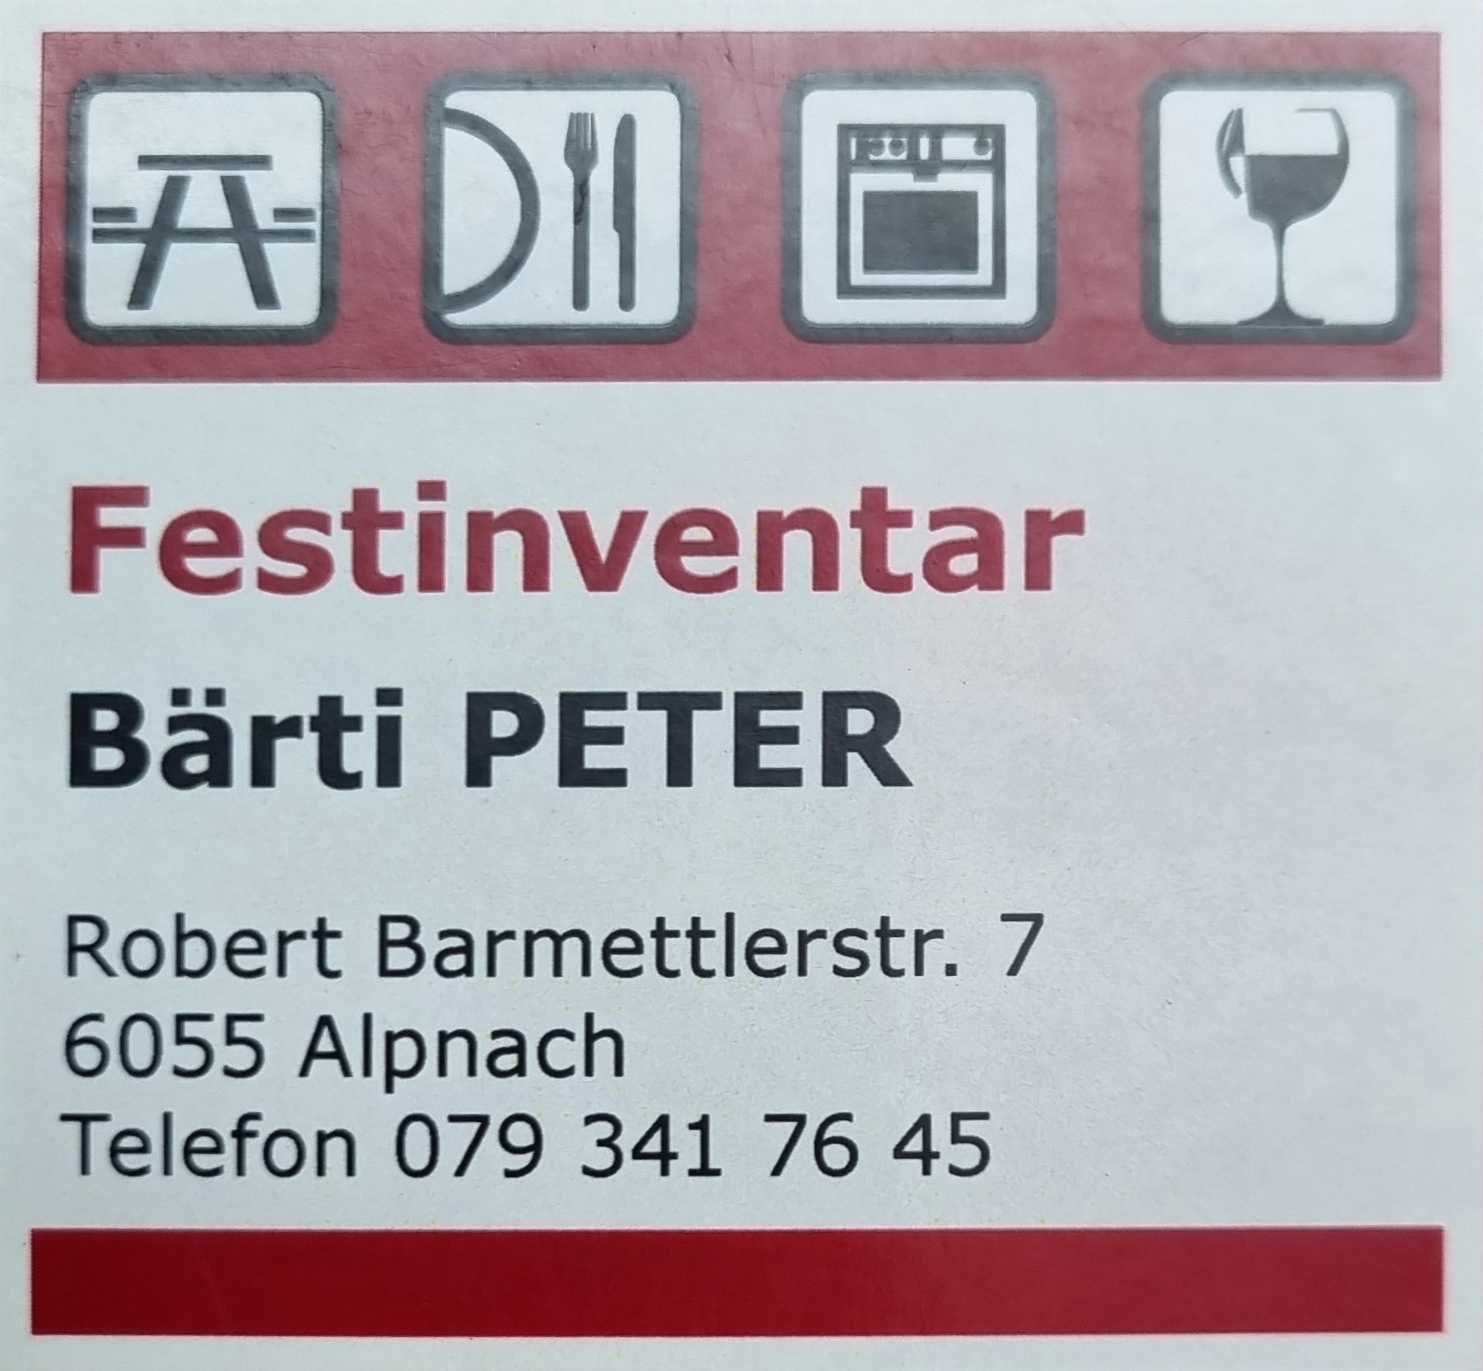 Festinventar Bärti Peter